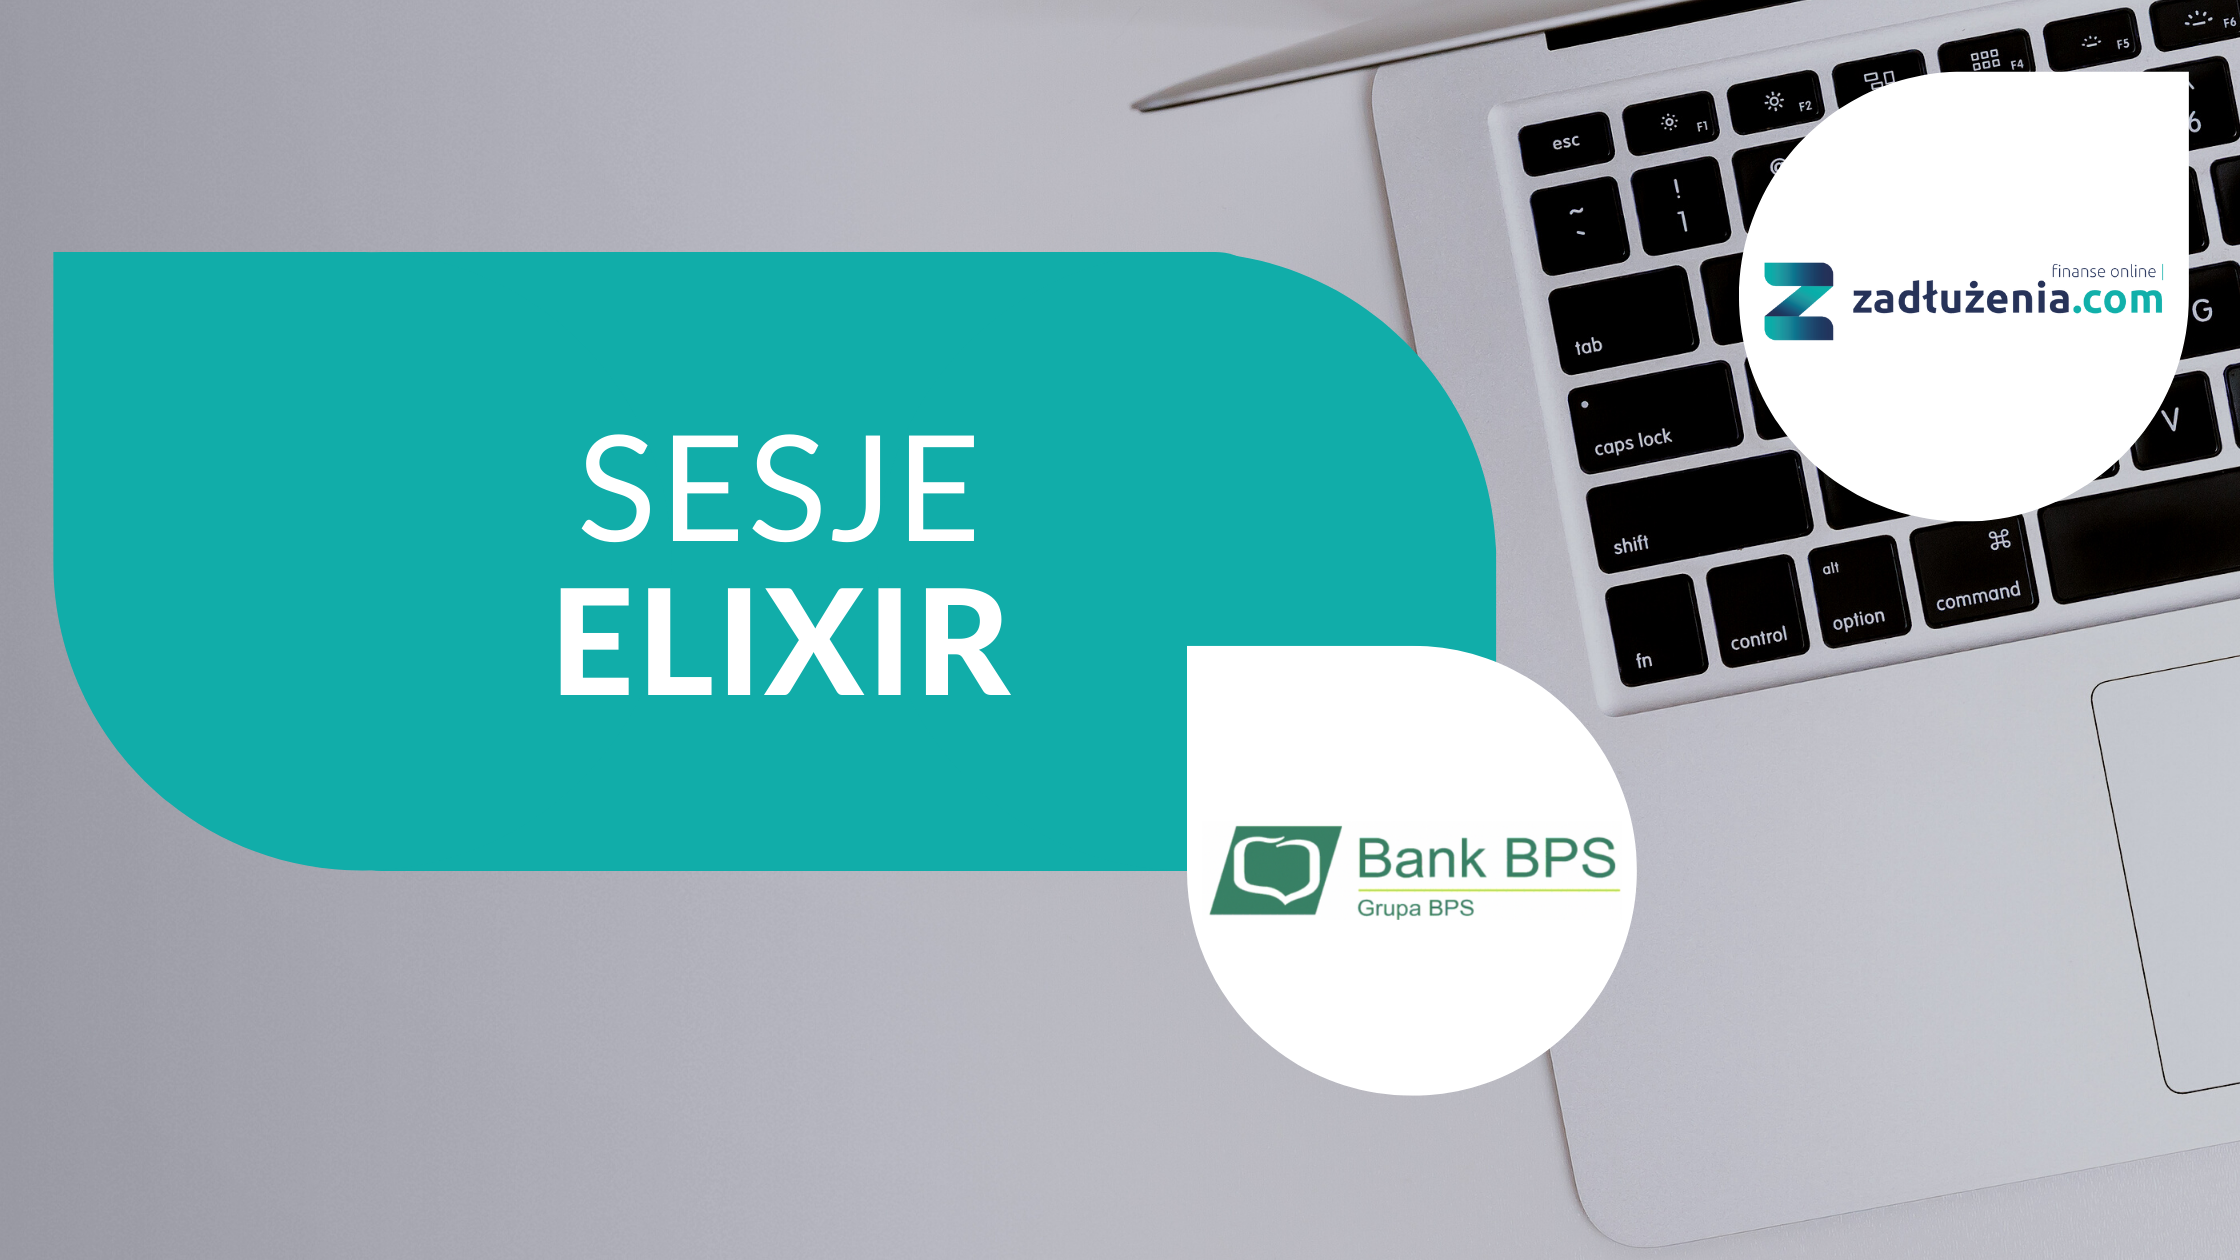 Bank BPS sesje Elixir